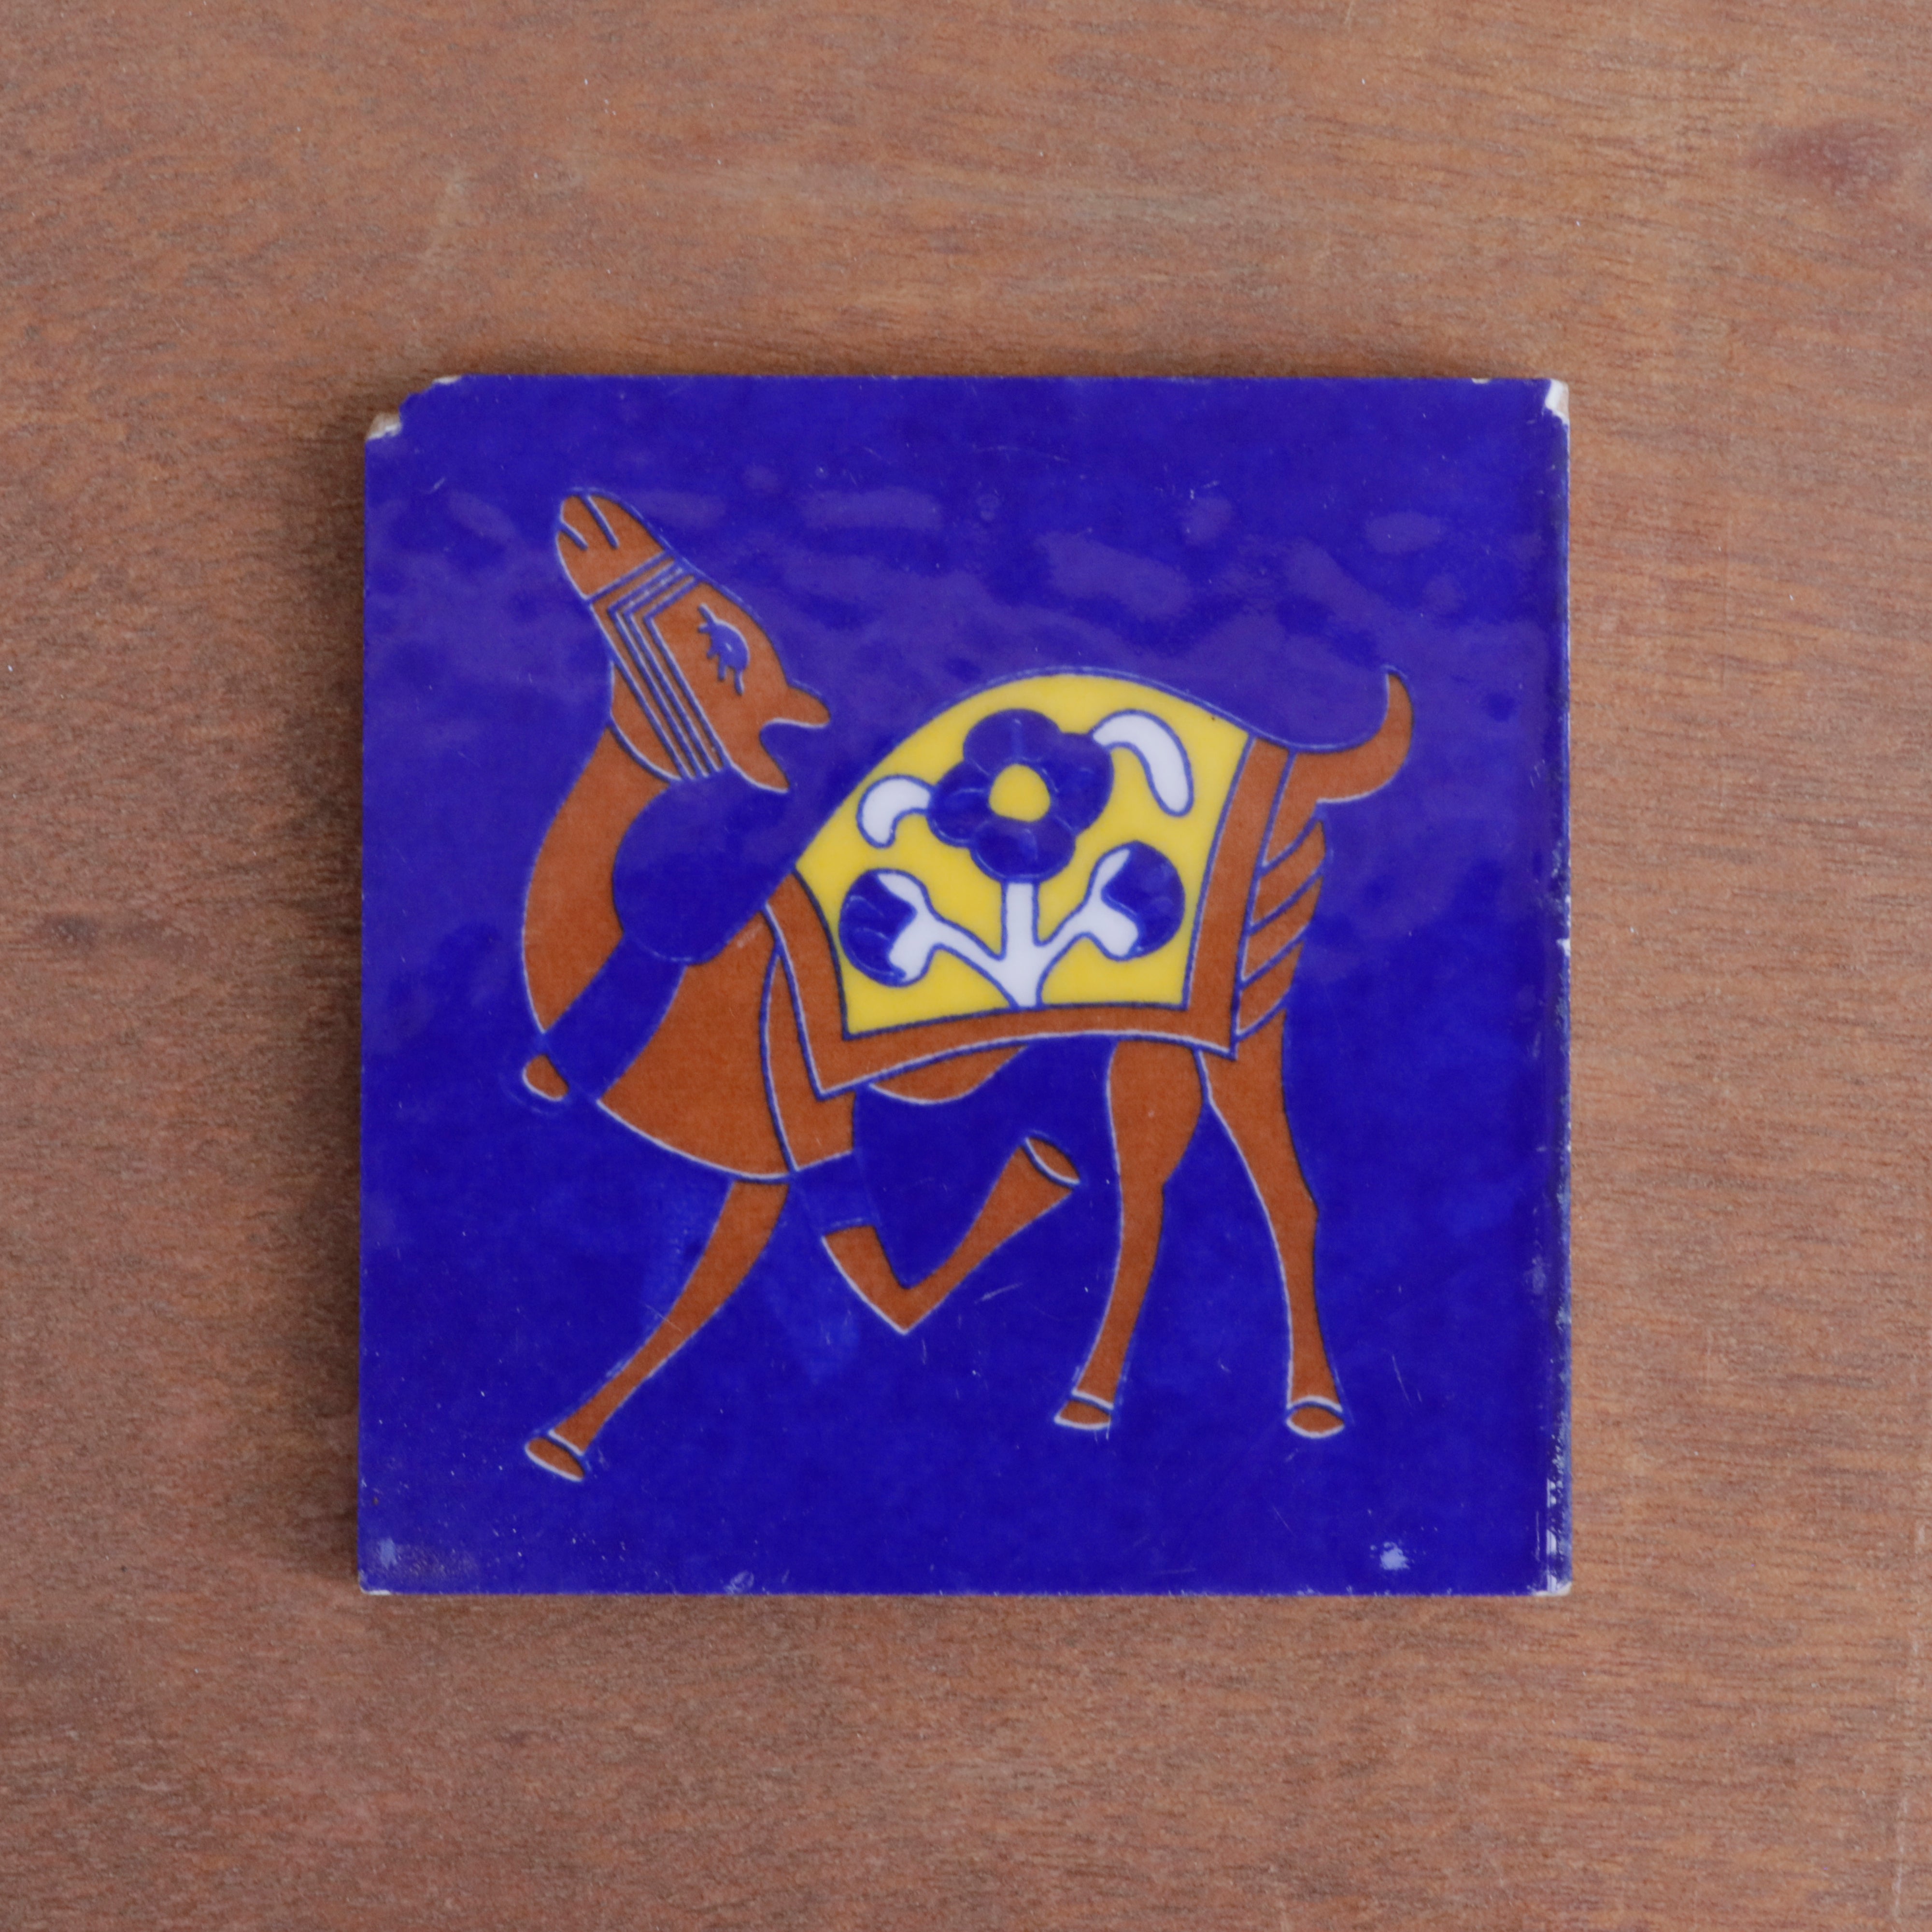 Montage Blue Dancing Camel Designed Square Ceramic Tile Ceramic Tile